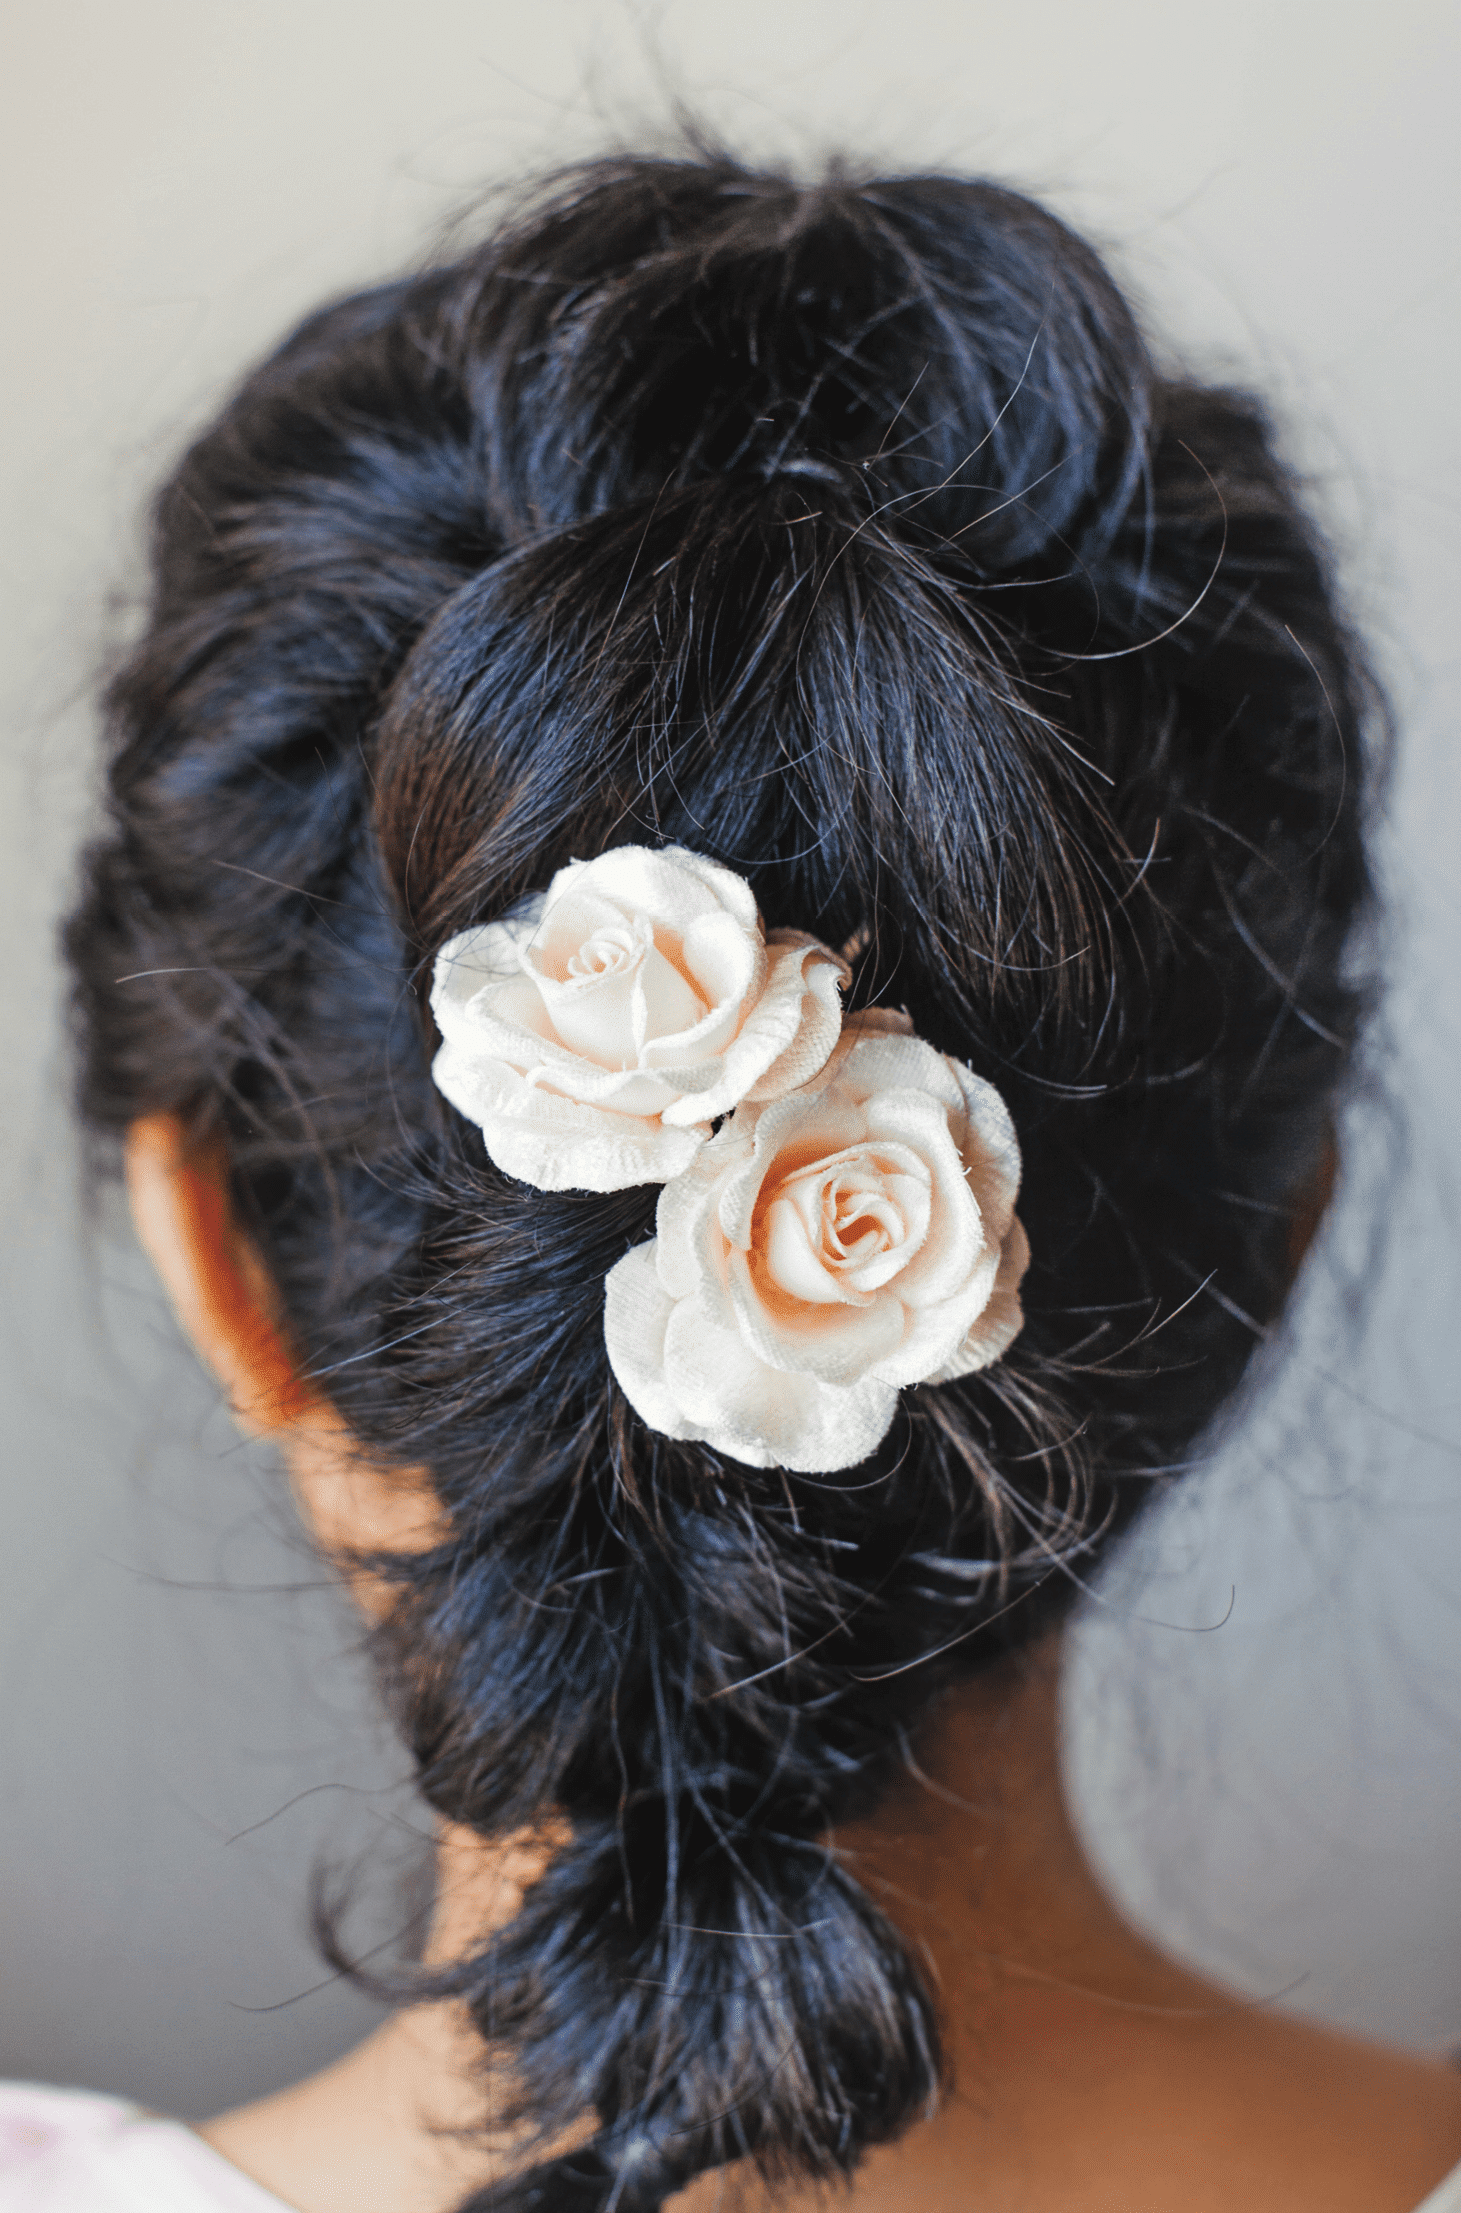 Penteado para cabelo curto com pequenas flores como decoração